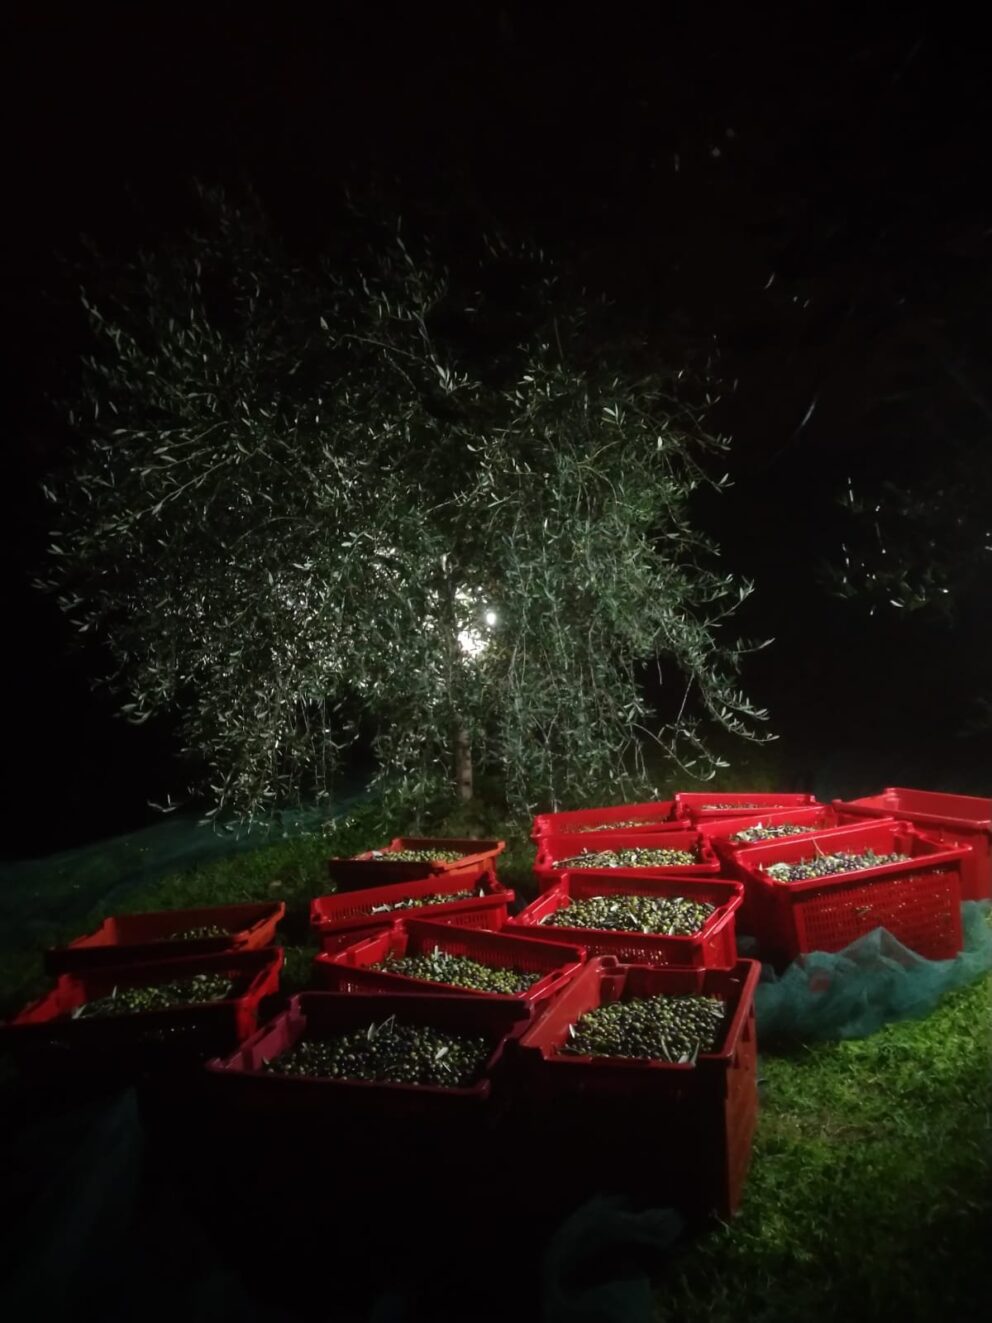 La raccolta notturna delle olive in Liguria